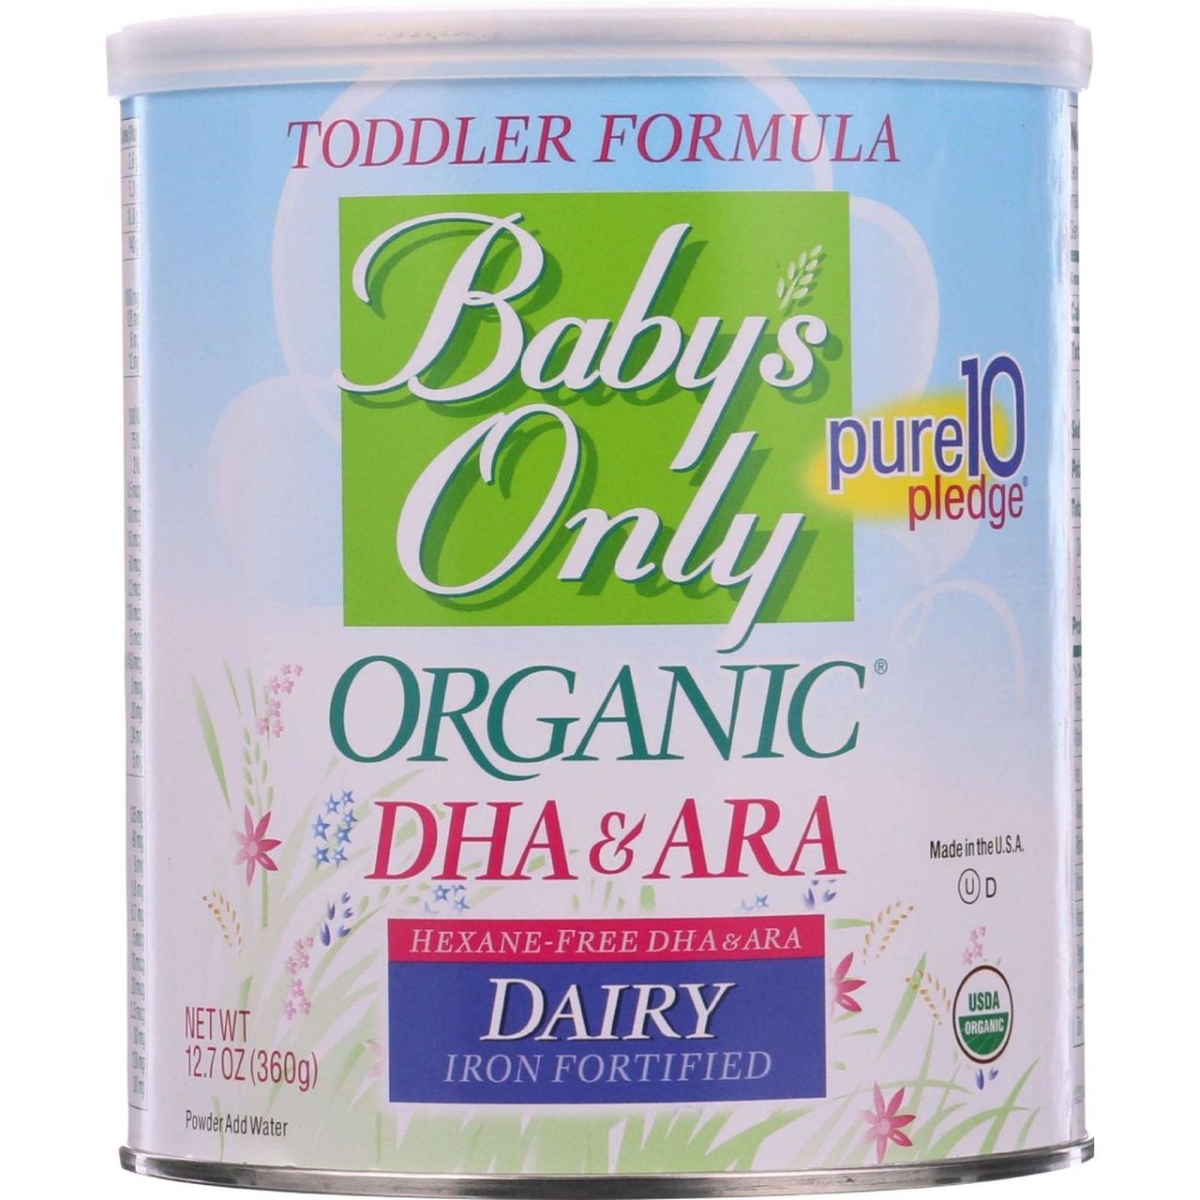 Hg1093210 12.7 Oz Organic Toddler Formula - Dairy Dha & Ara, Case Of 6